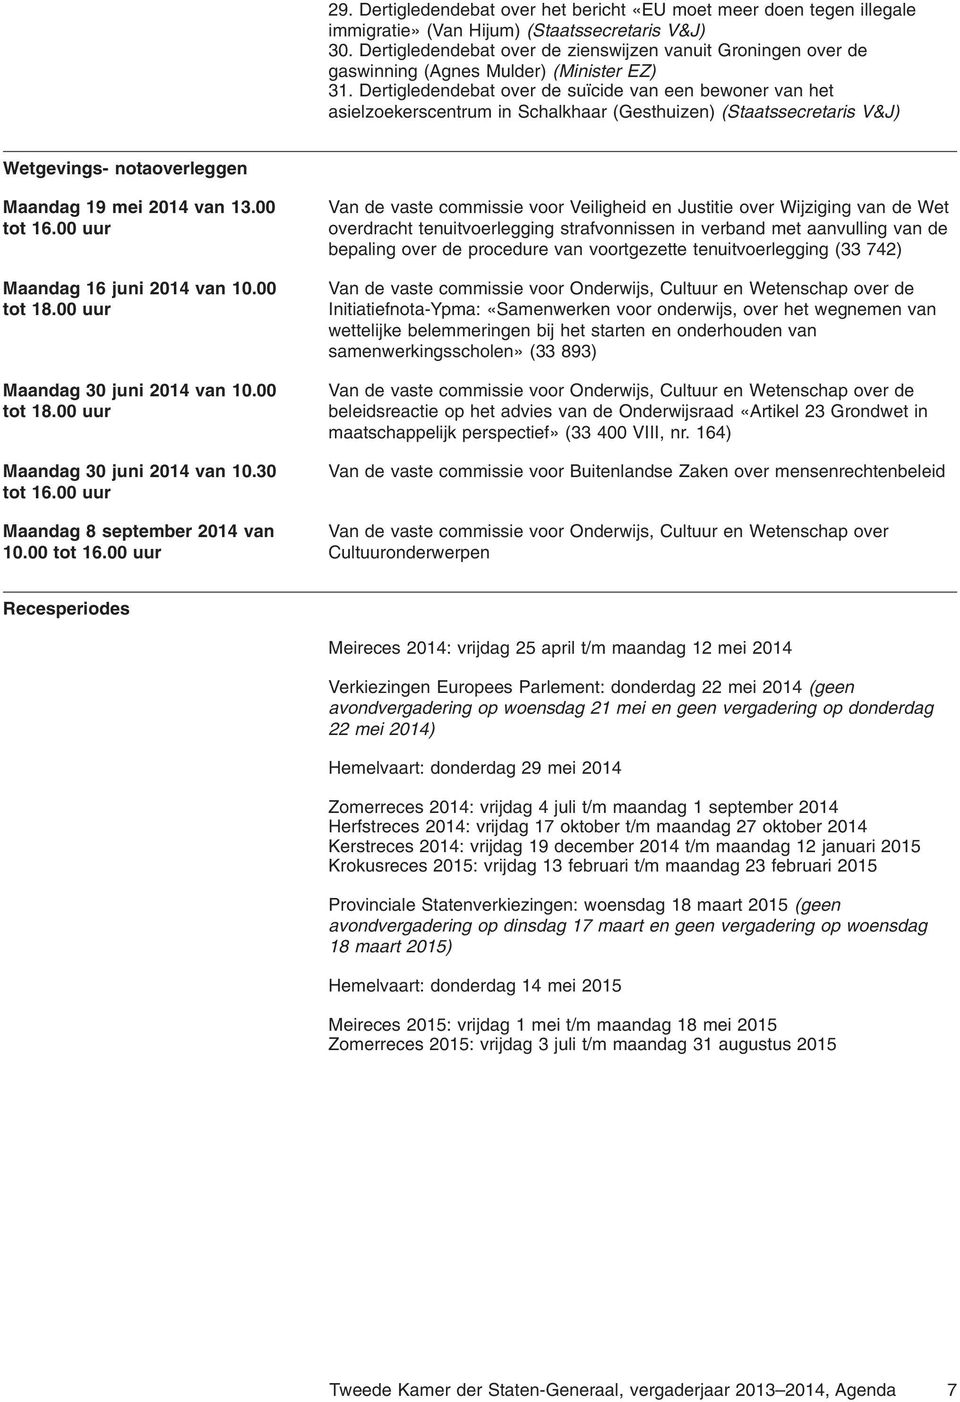 Dertigledendebat over de suïcide van een bewoner van het asielzoekerscentrum in Schalkhaar (Gesthuizen) (Staatssecretaris V&J) Wetgevings- notaoverleggen Maandag 19 mei 2014 van 13.00 tot 16.